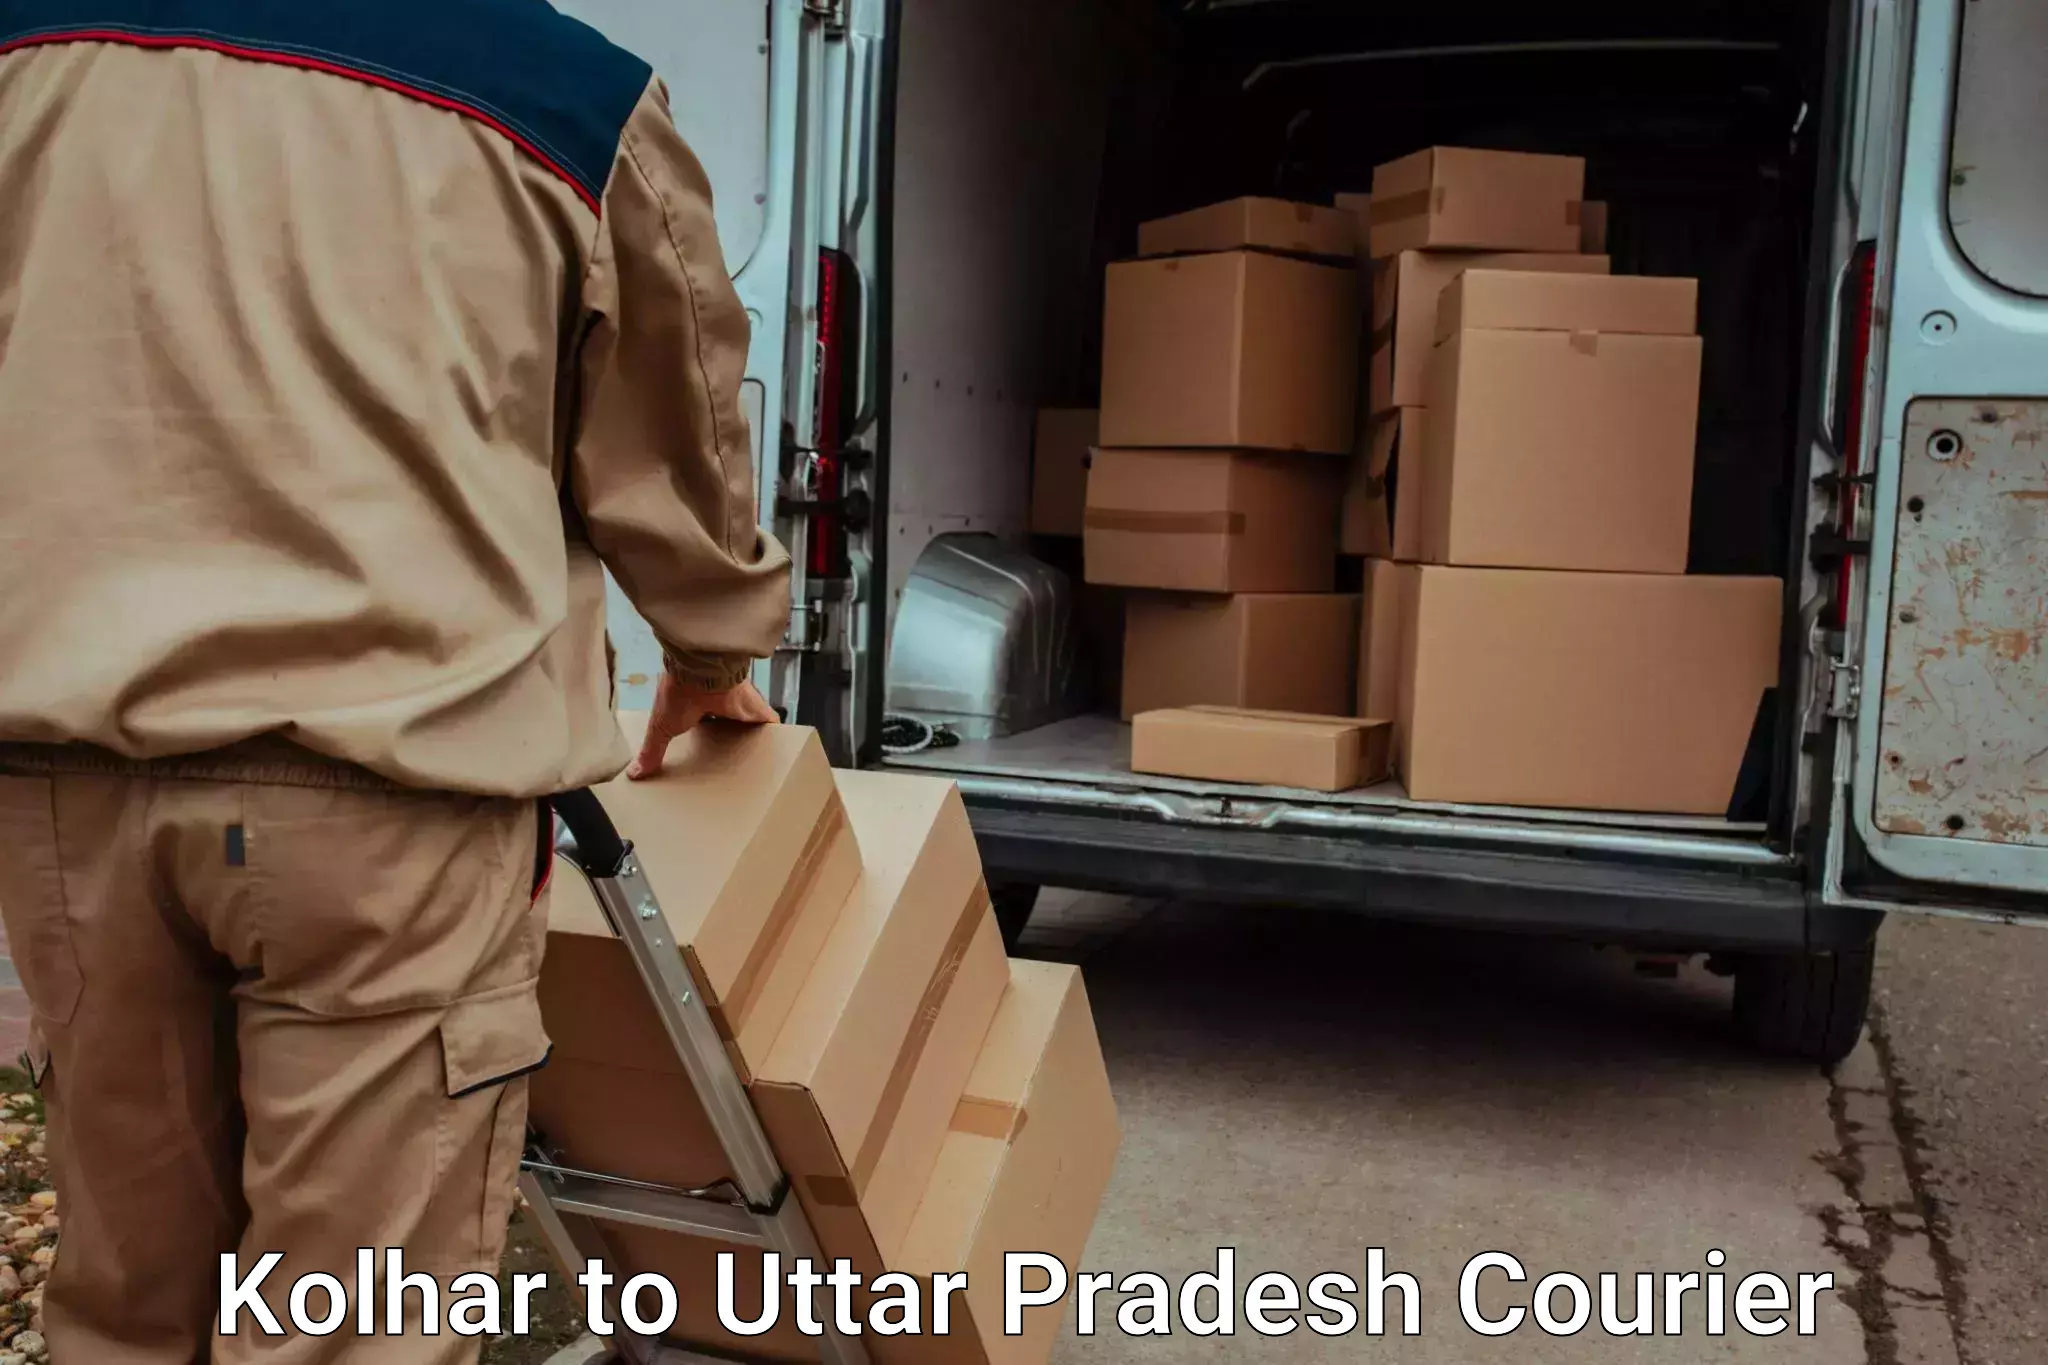 Baggage transport estimate Kolhar to Agra